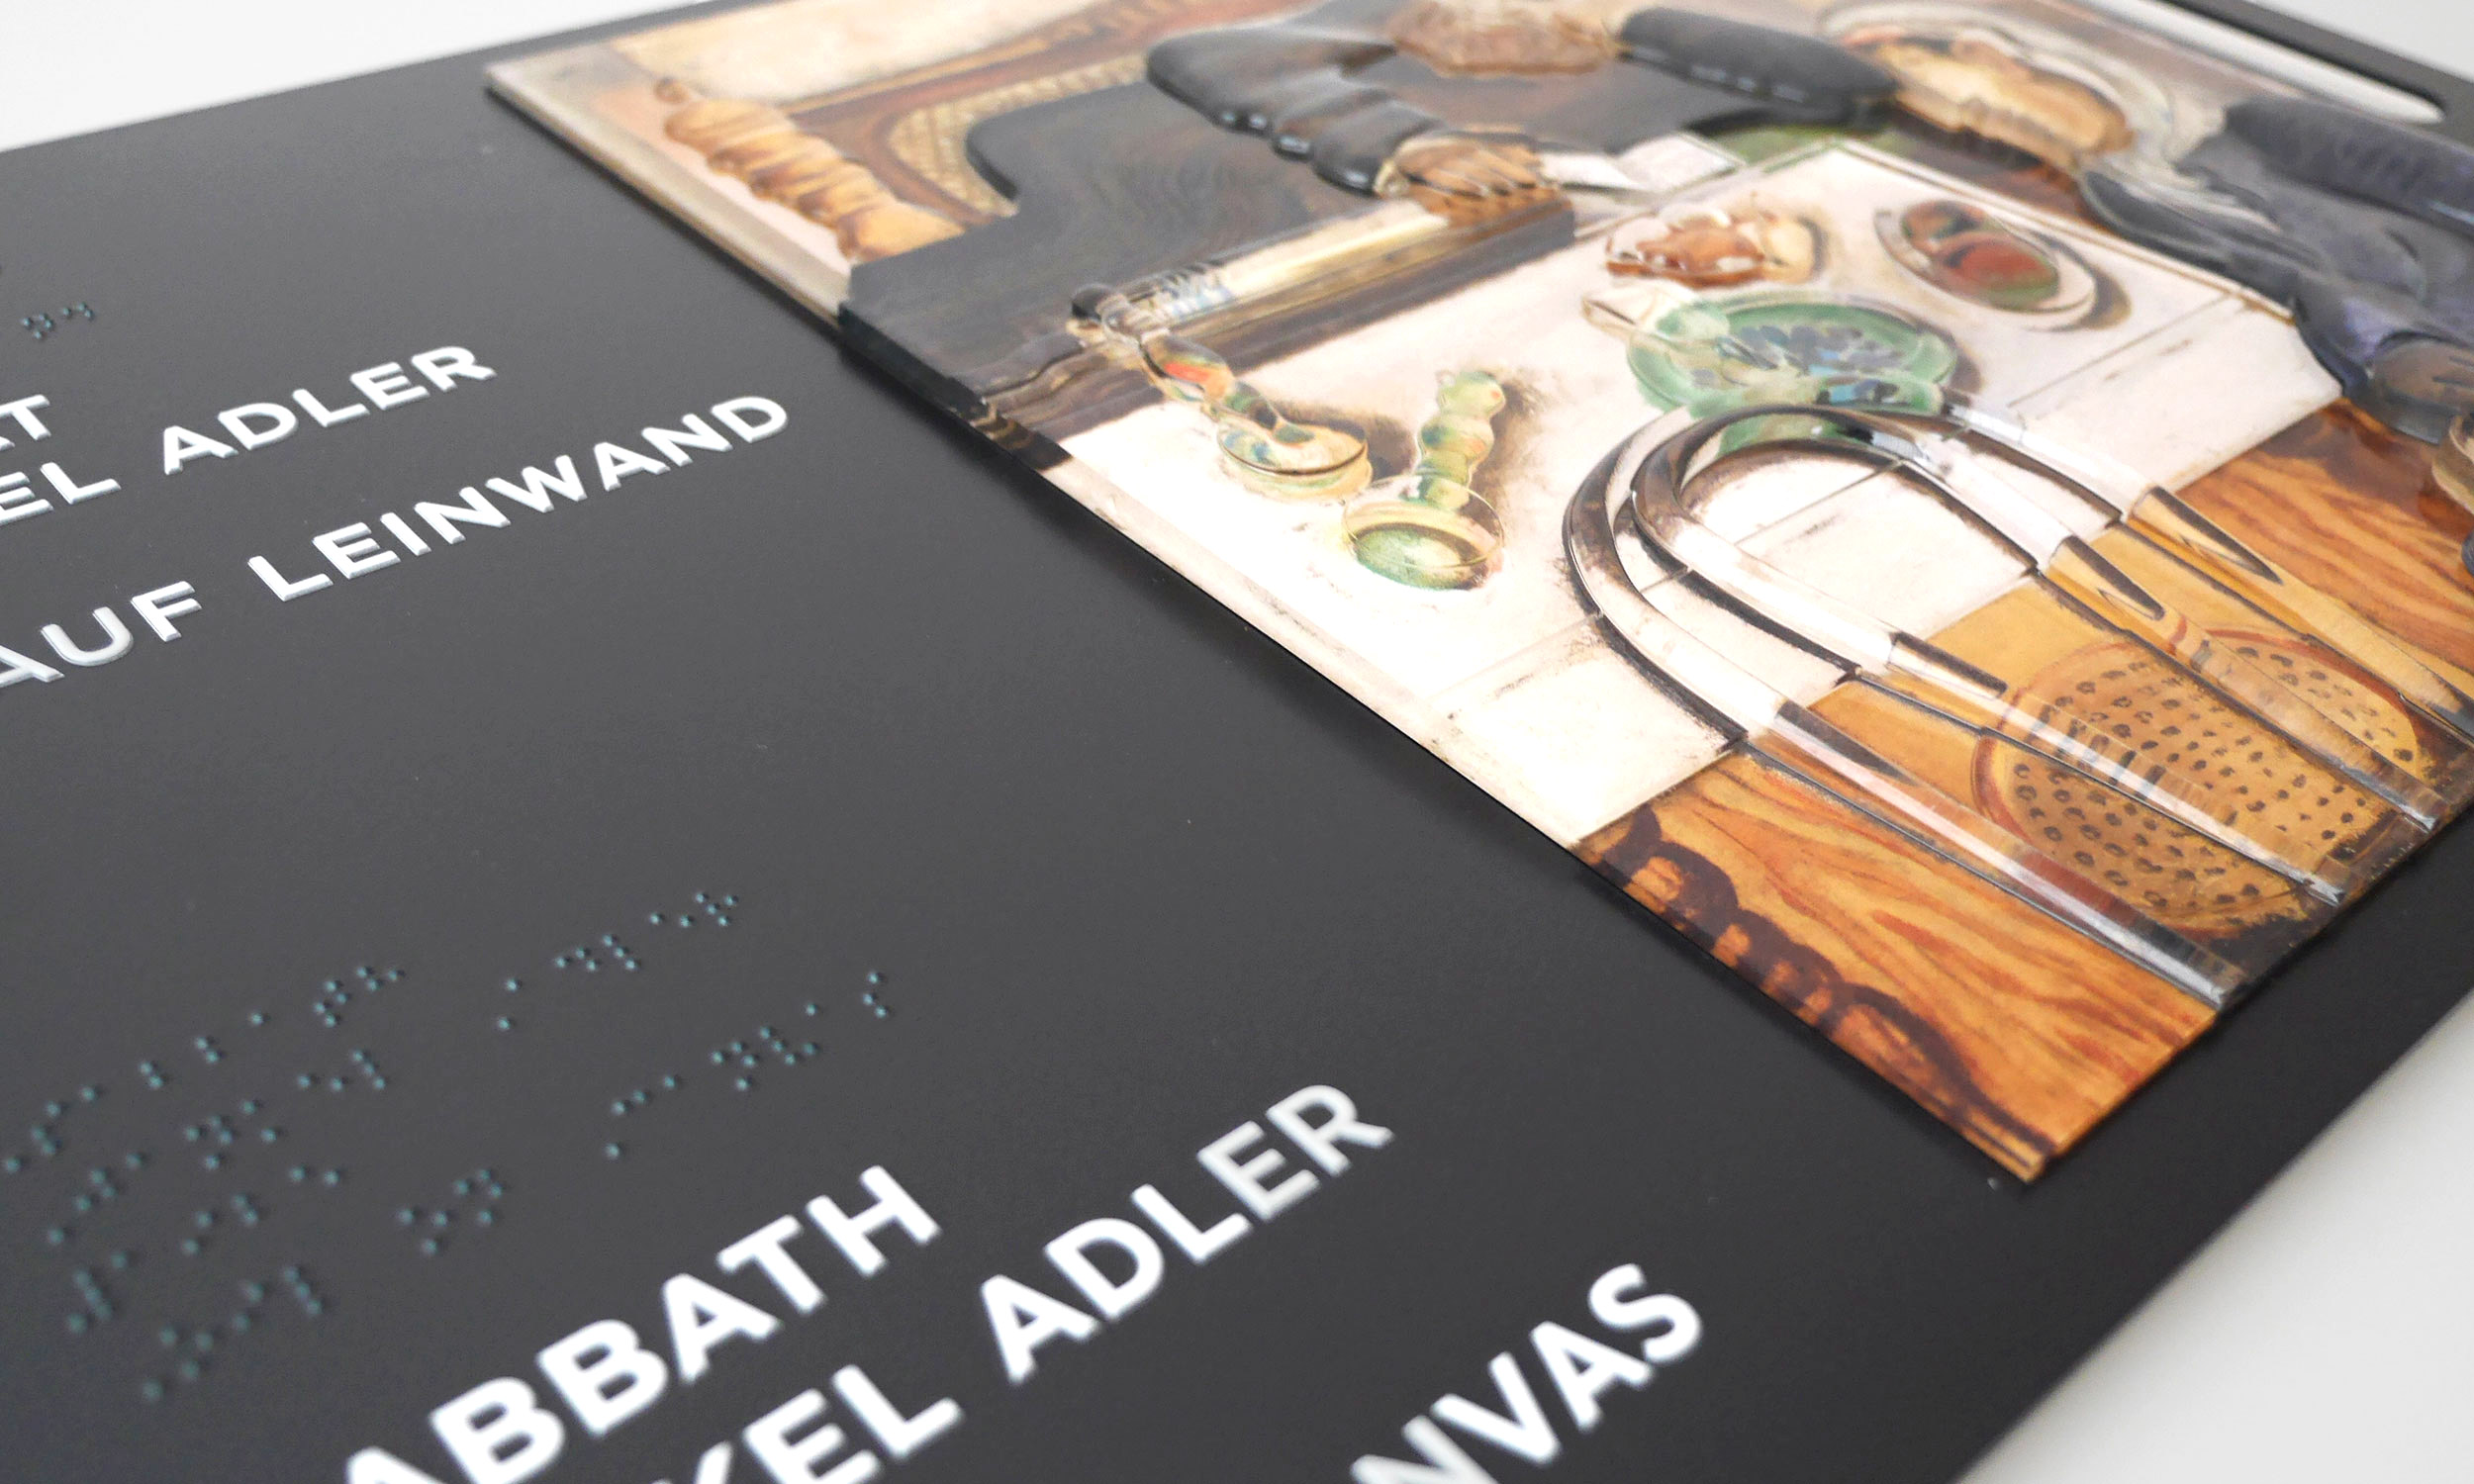 Detailfoto vom Tastmodell des Gemäldes „Sabbat“ von Janker Adler. Zu sehen sind Teile der rechten Hälfte des Tastplans mit dem Kunstwerk in Acryl, sowie Teile der linken Hälfte mit Beschreibung in Profilschrift und in Braille.